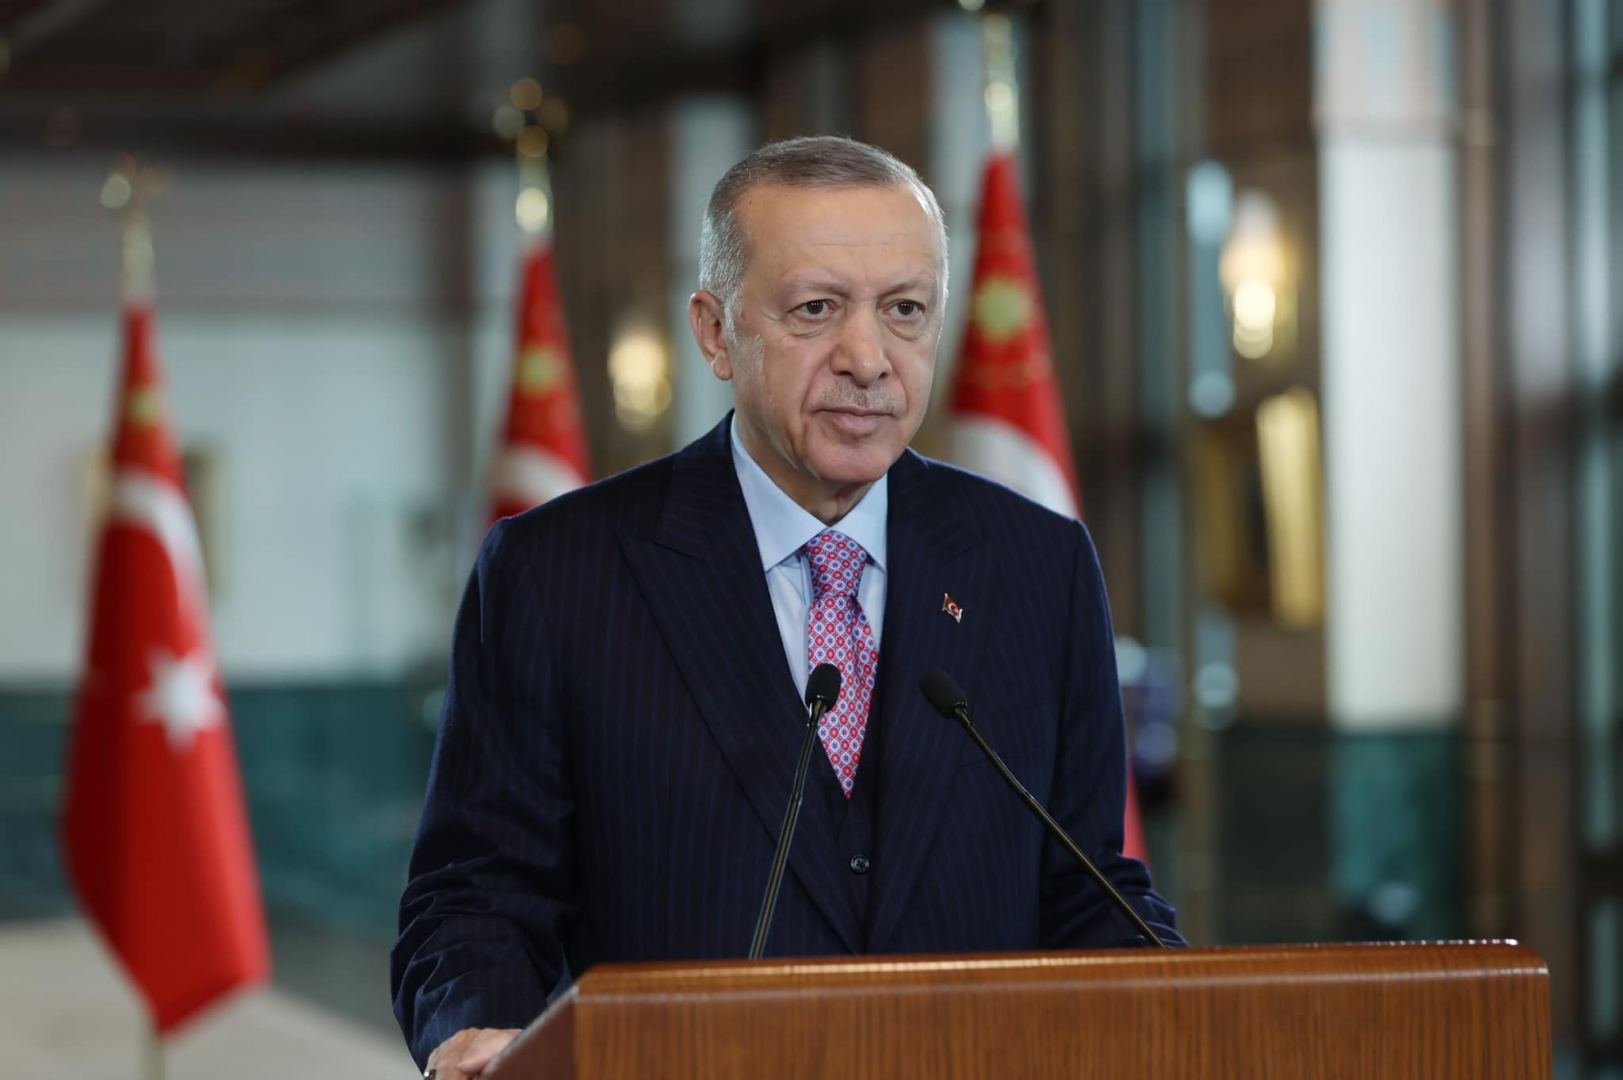 Турция достигает исторических успехов в оборонпроме - Эрдоган